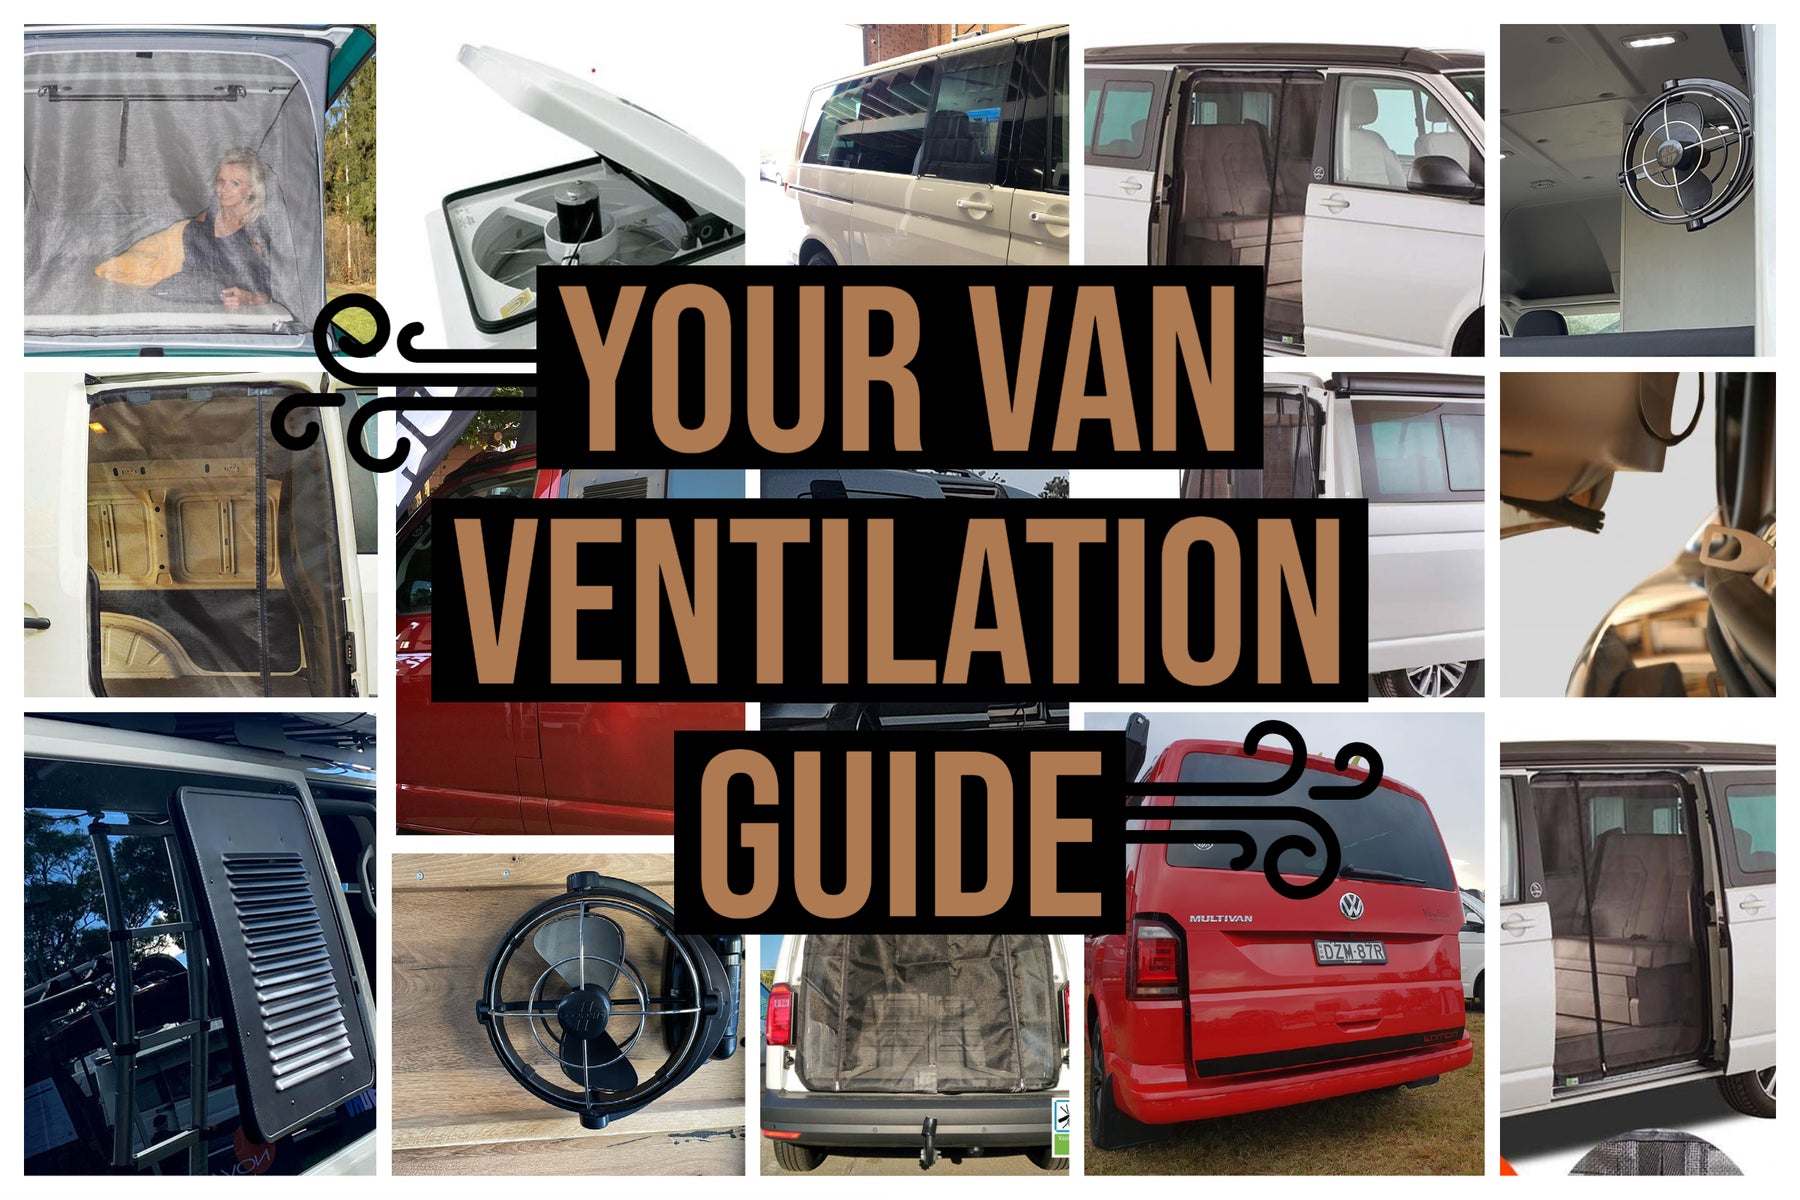 Your Van Ventilation Guide